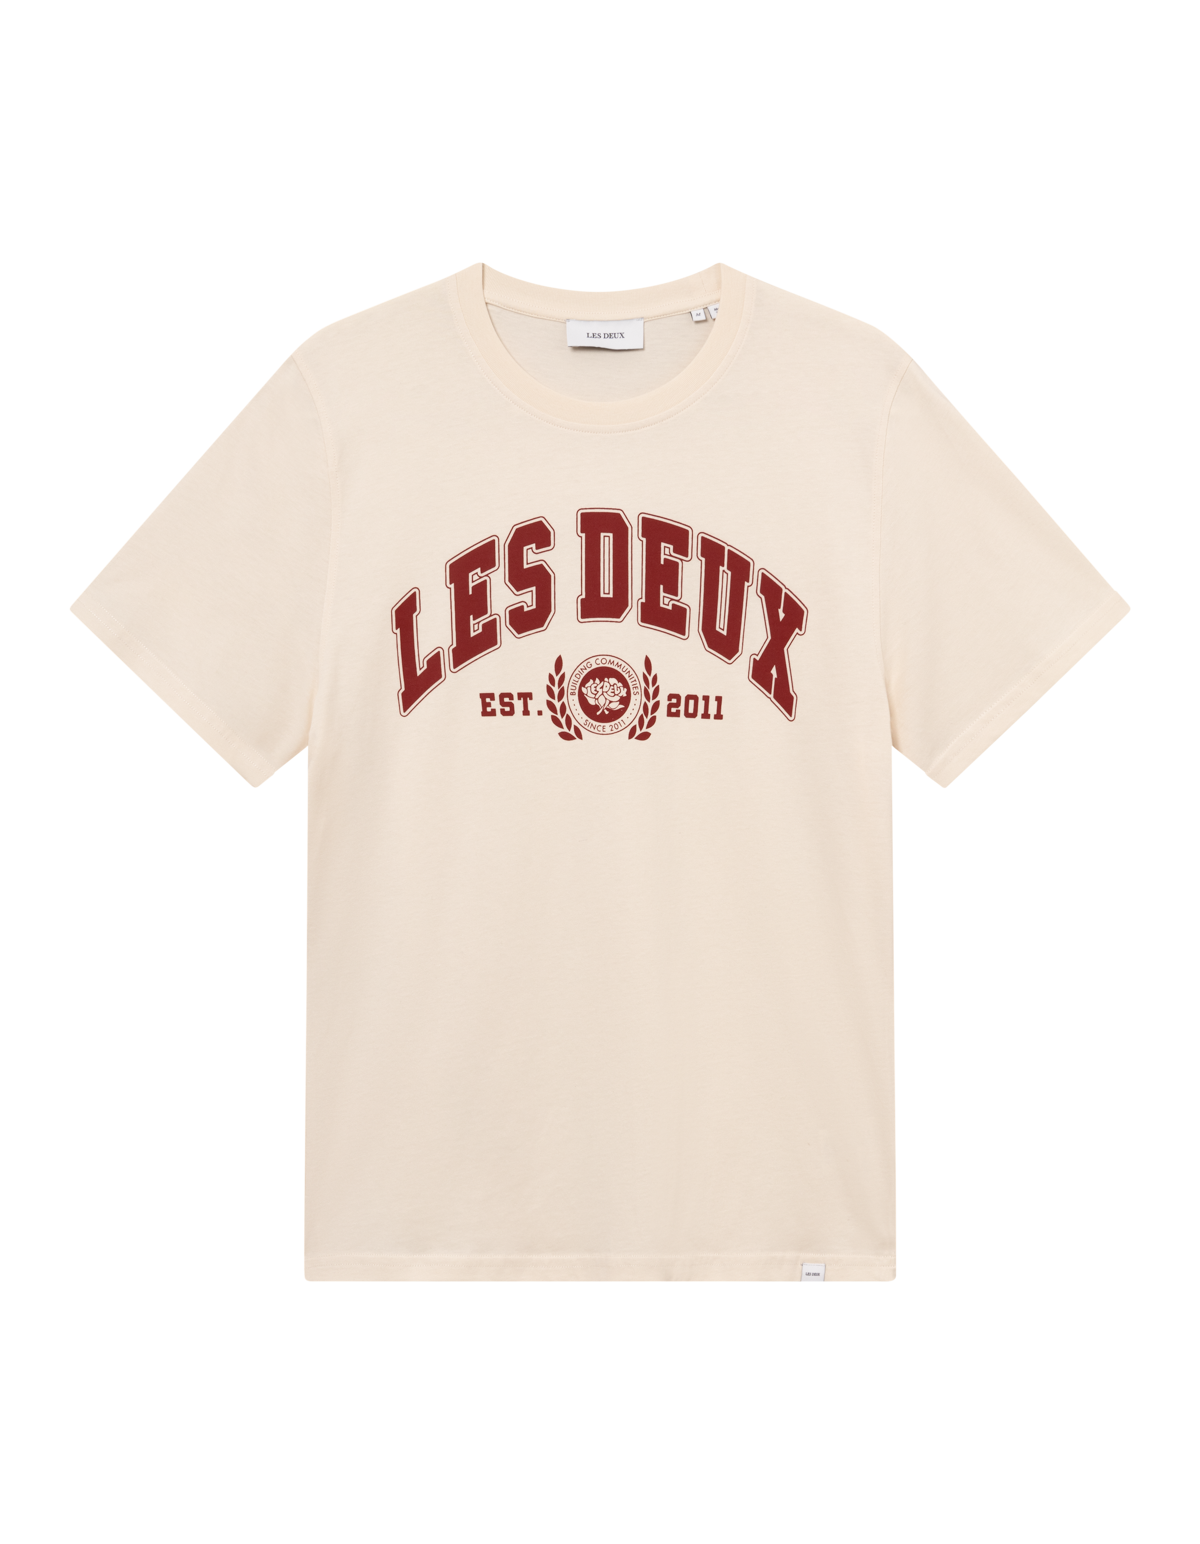 m tops - LES DEUX - University T-Shirt - PLENTY